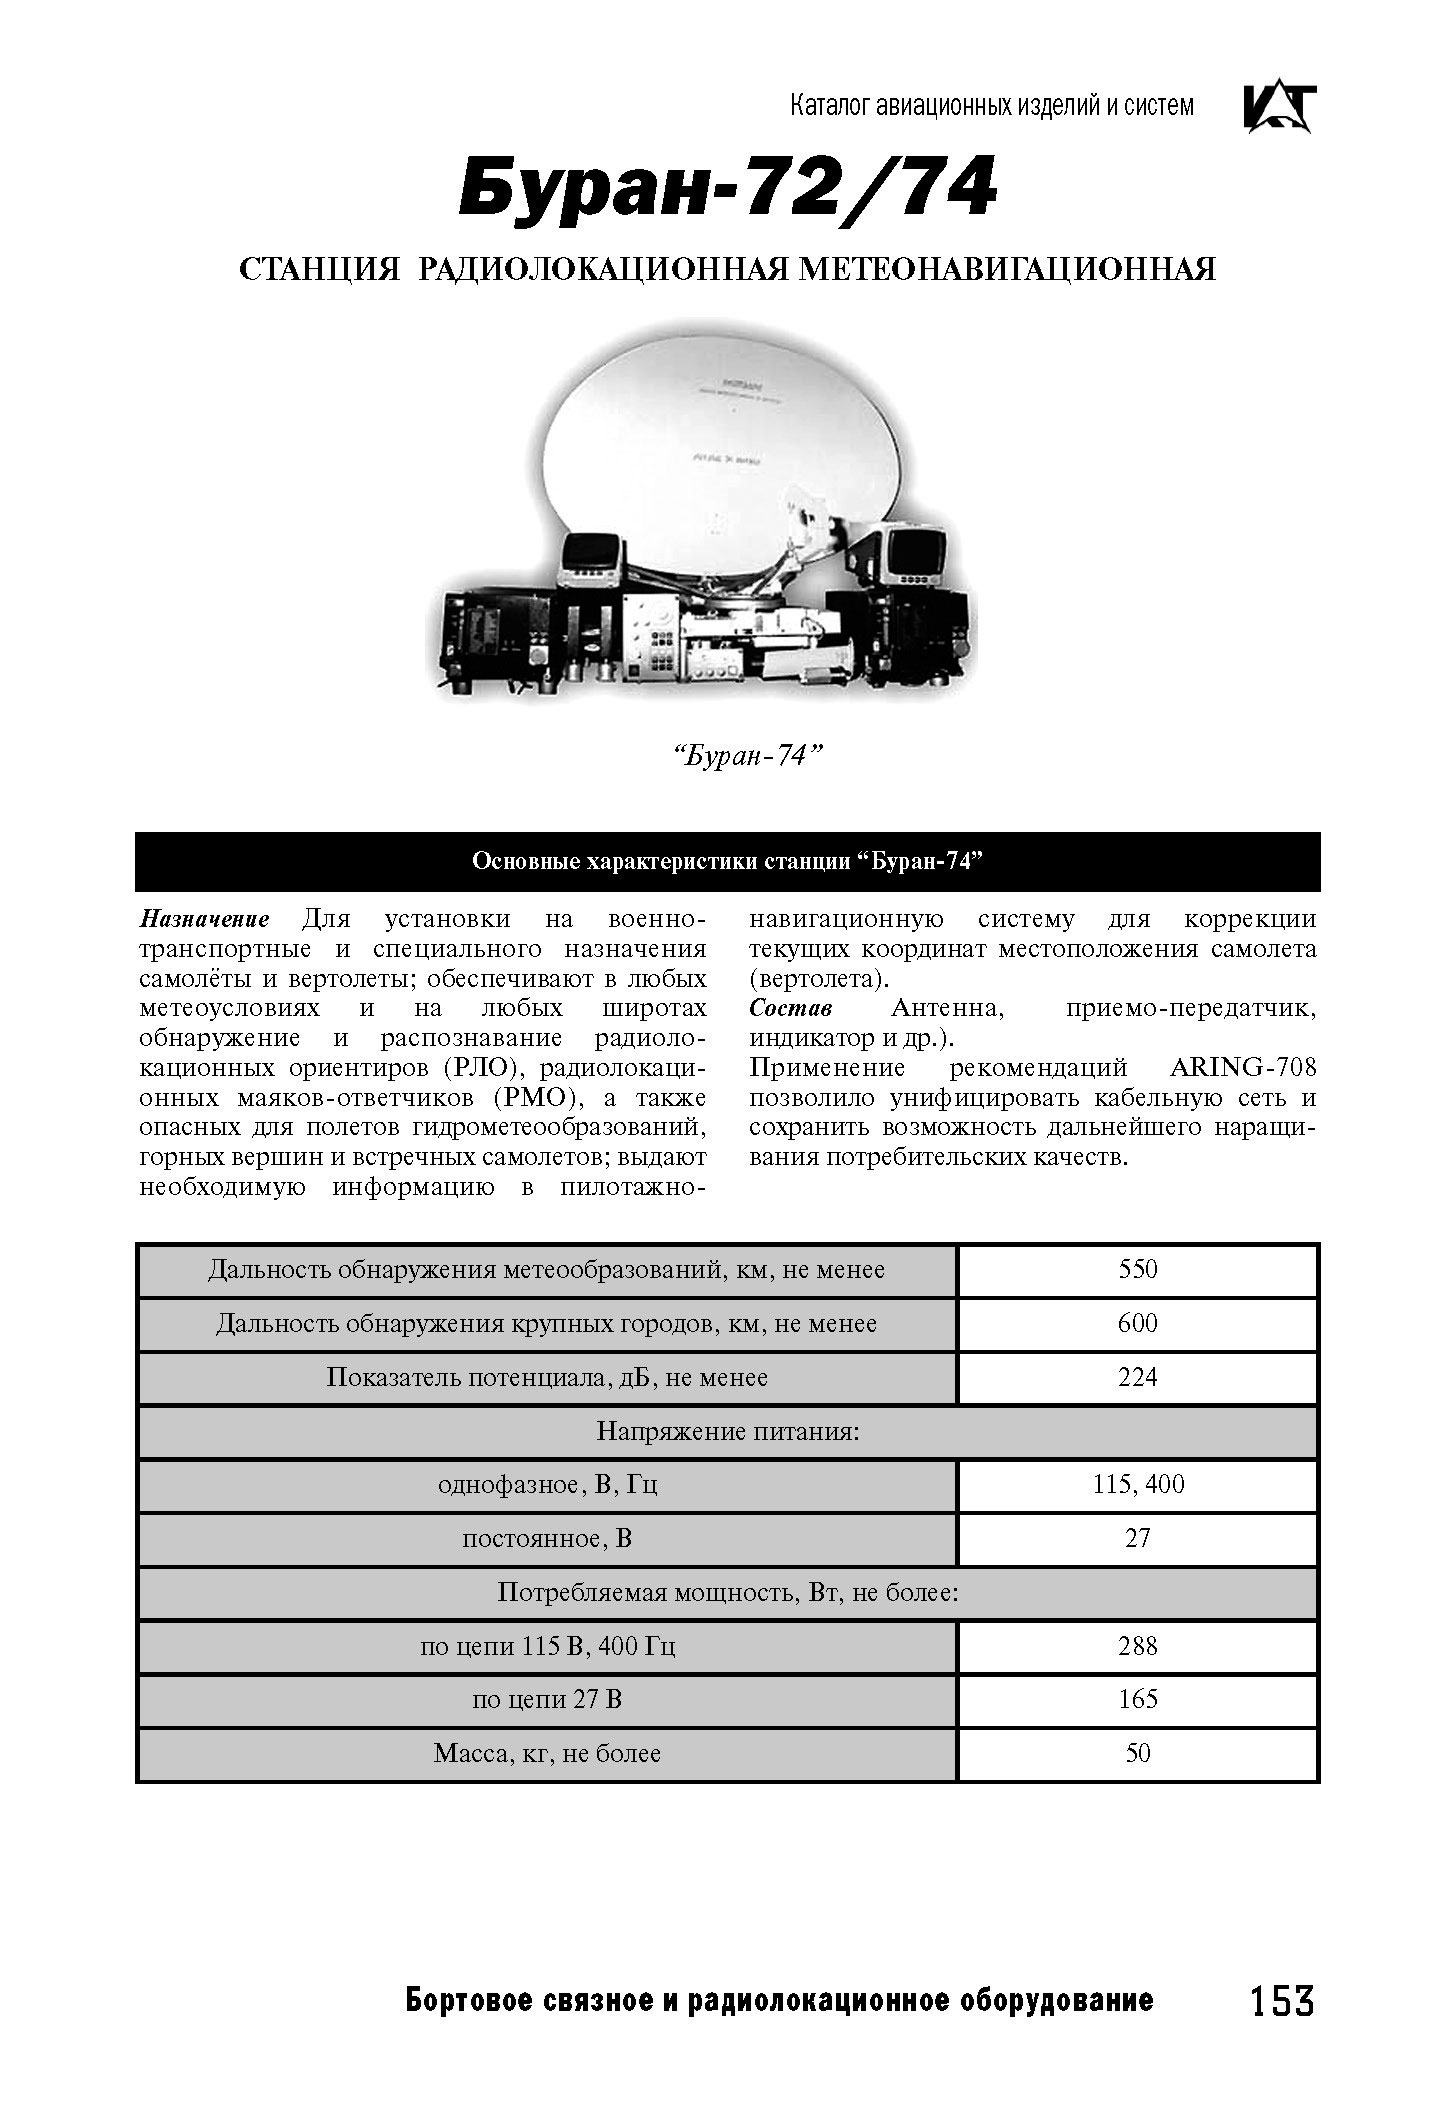 Вертолетные запчасти : комплекс радиолокационный бортовой Буран-74